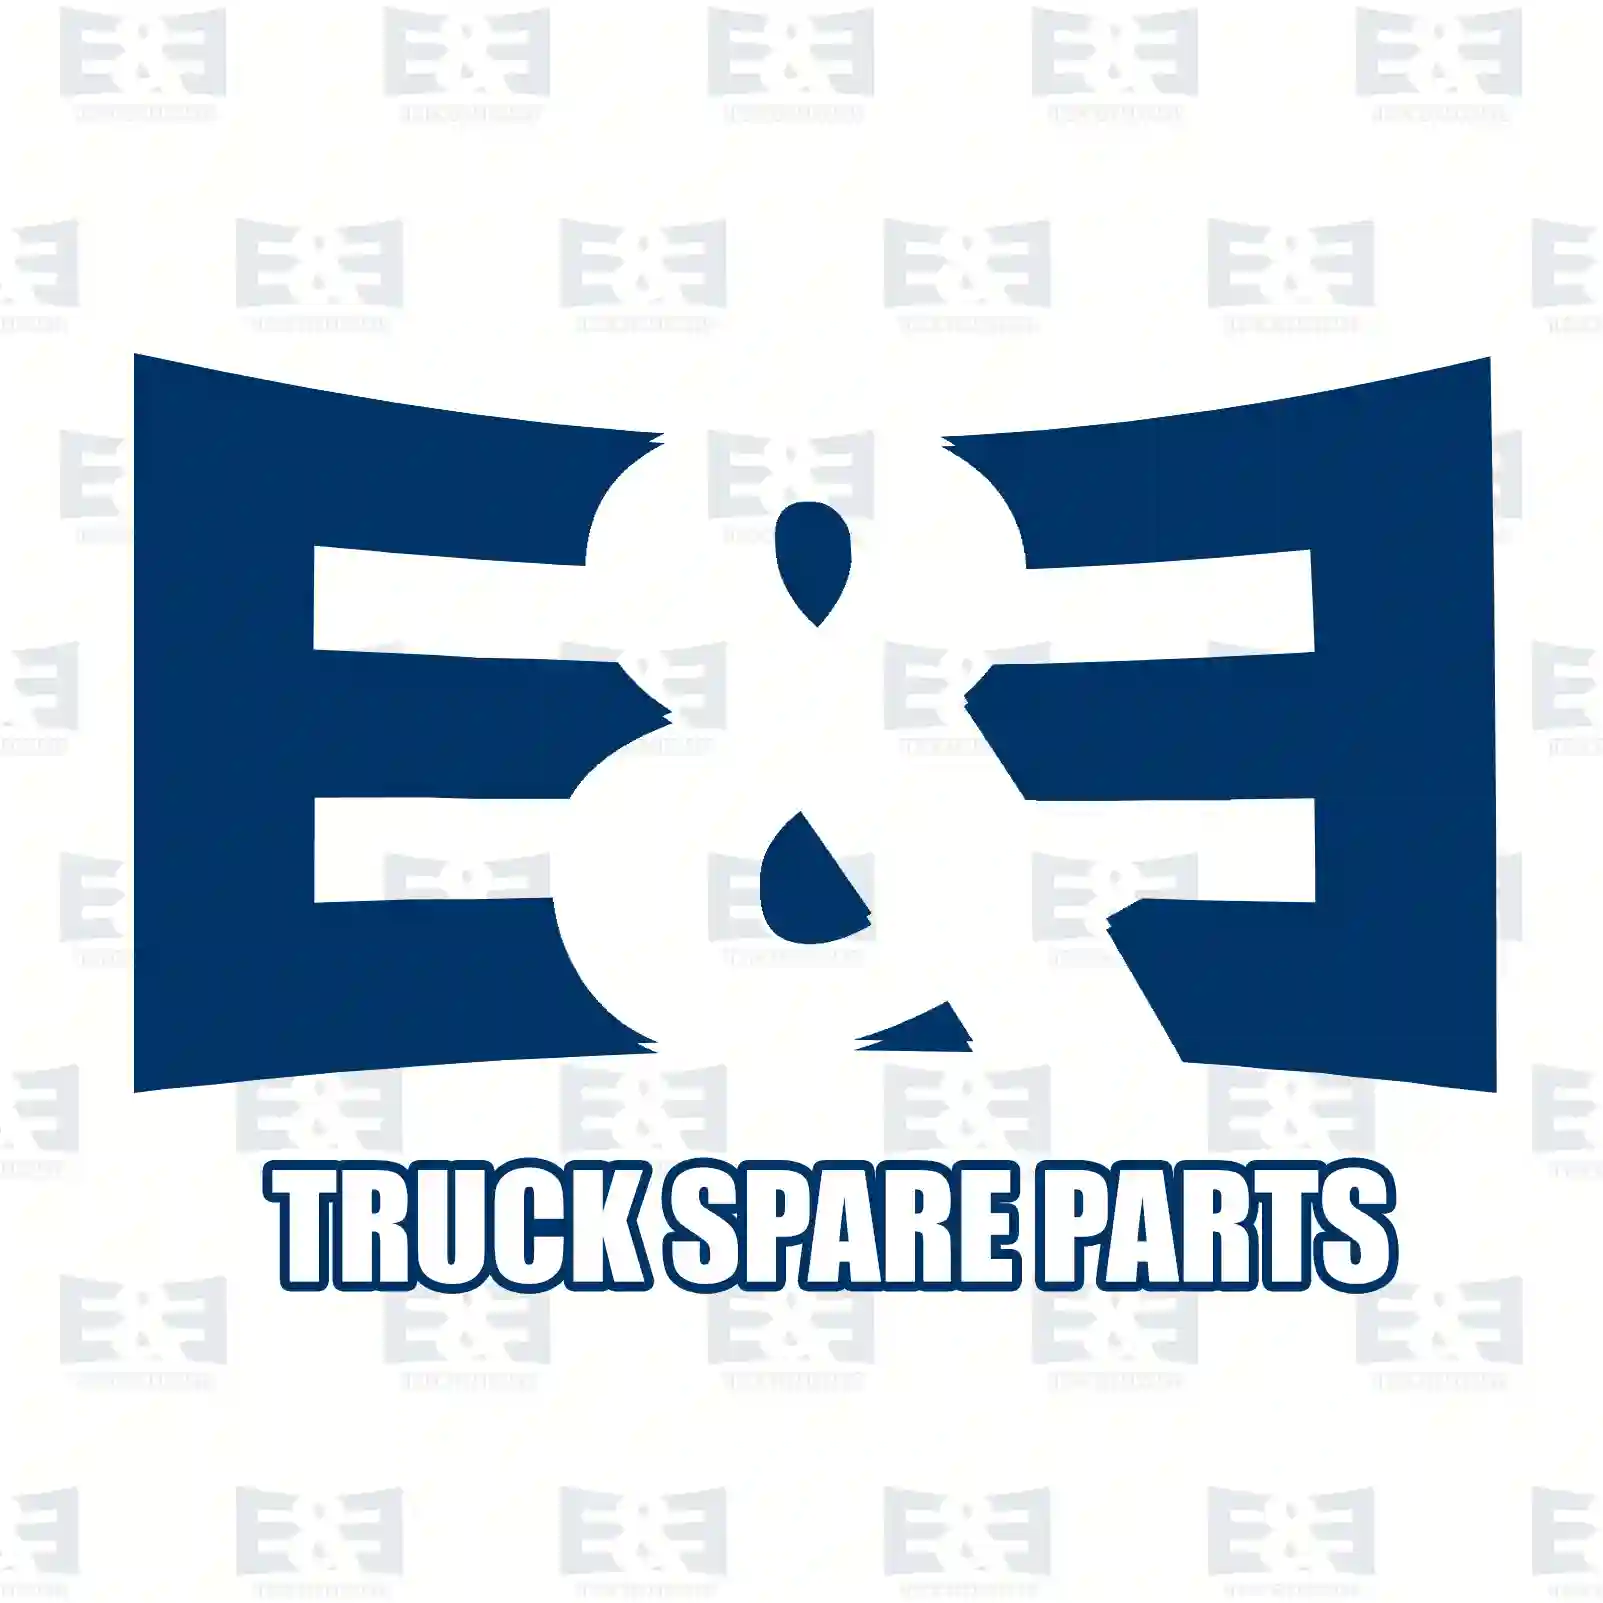 Propeller shaft, 2E2276871, 7401069500, 10695 ||  2E2276871 E&E Truck Spare Parts | Truck Spare Parts, Auotomotive Spare Parts Propeller shaft, 2E2276871, 7401069500, 10695 ||  2E2276871 E&E Truck Spare Parts | Truck Spare Parts, Auotomotive Spare Parts